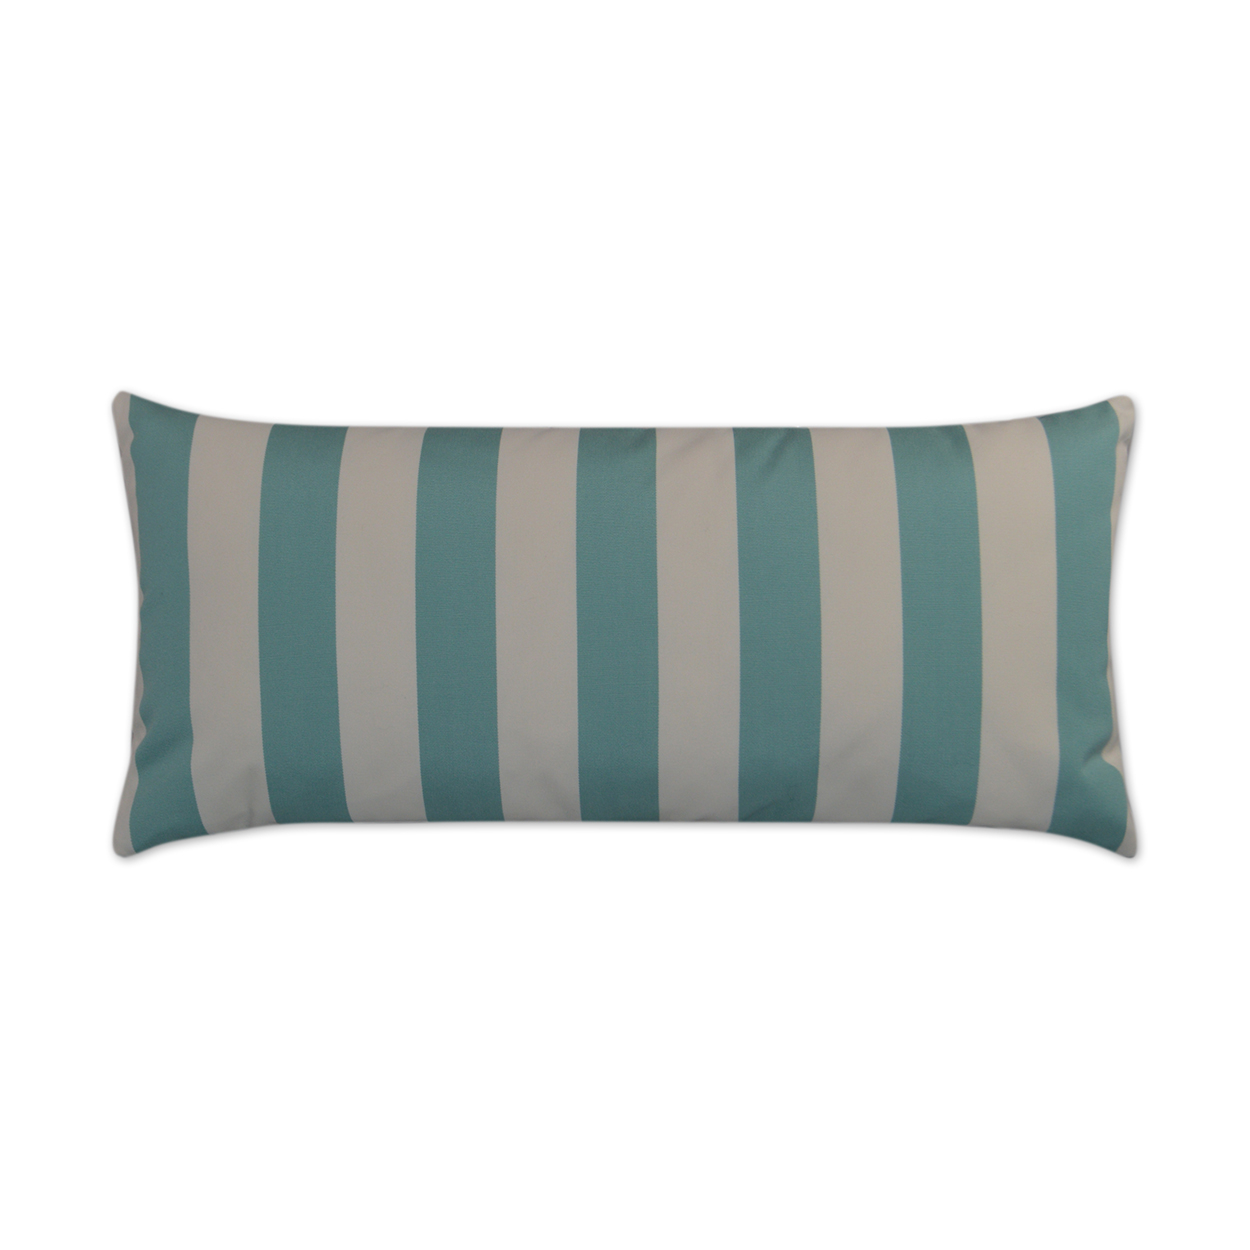 Cafe Stripe Aqua Lumbar Outdoor Pillow 24x12